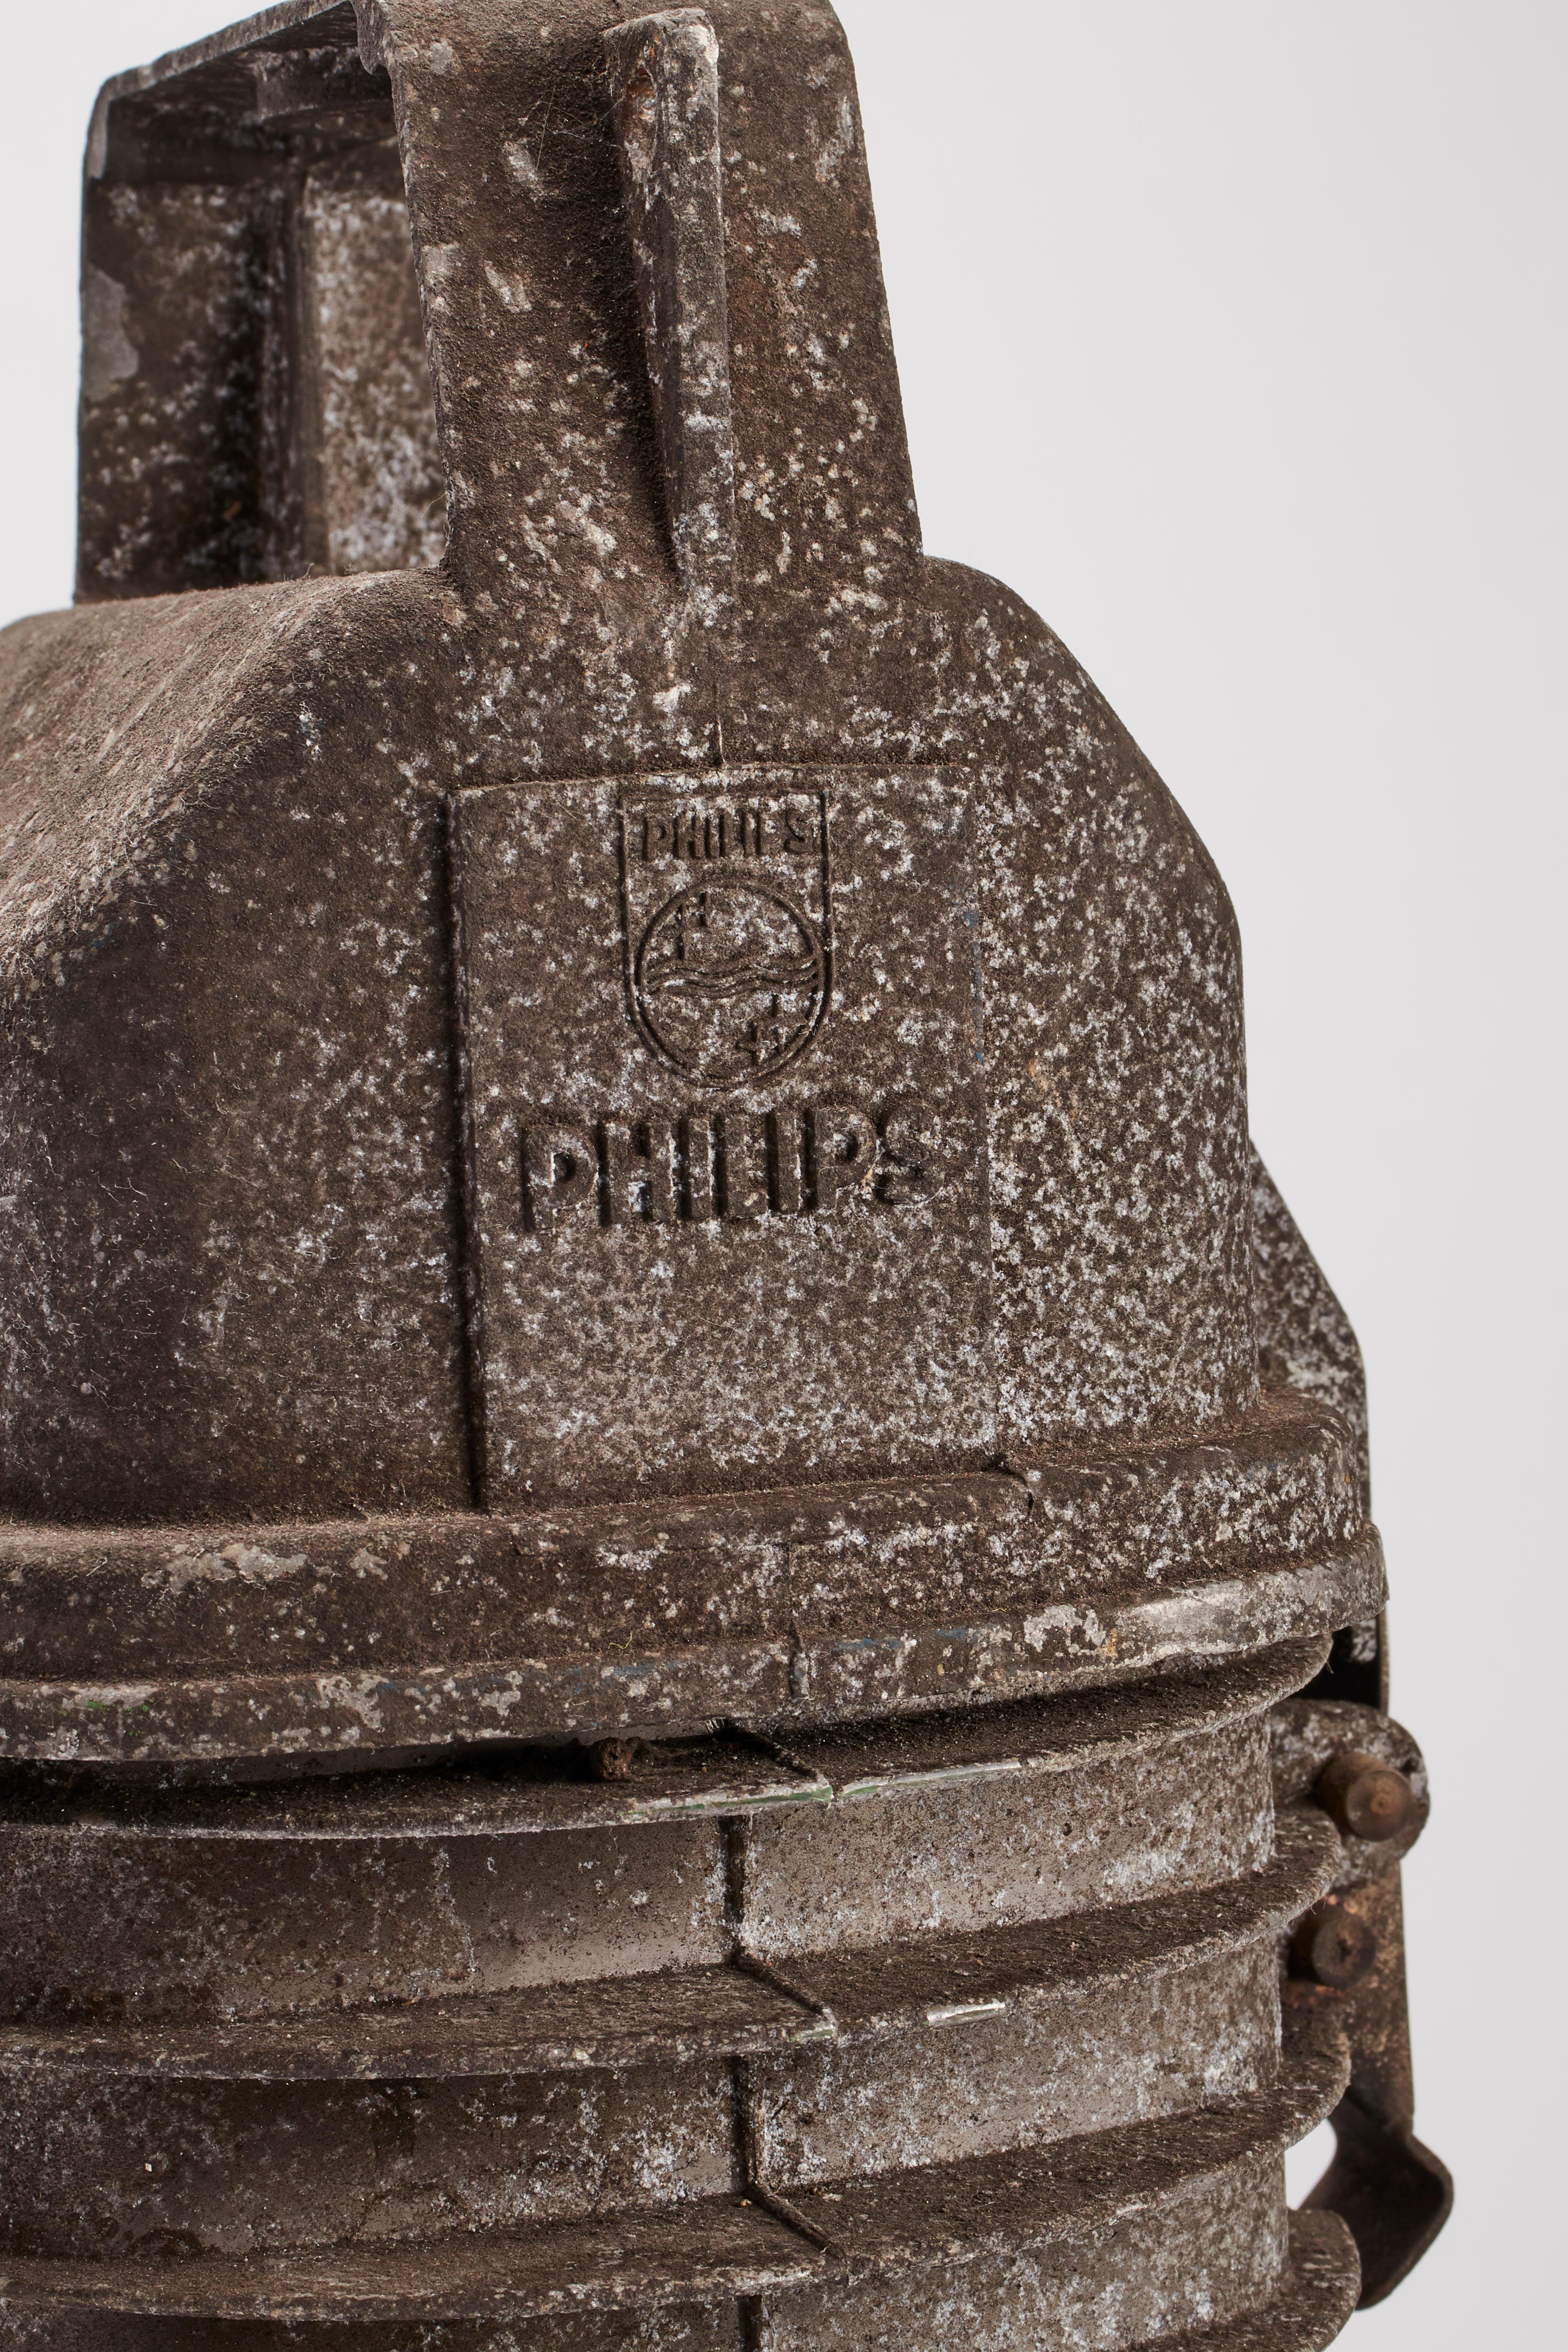 Lampe industrielle avec réservoir en aluminium noir pour le transformateur de tension ; dôme en aluminium, en forme de cône étroit. La lampe est réparée et prête à l'emploi. Philips - Allemagne 1930.